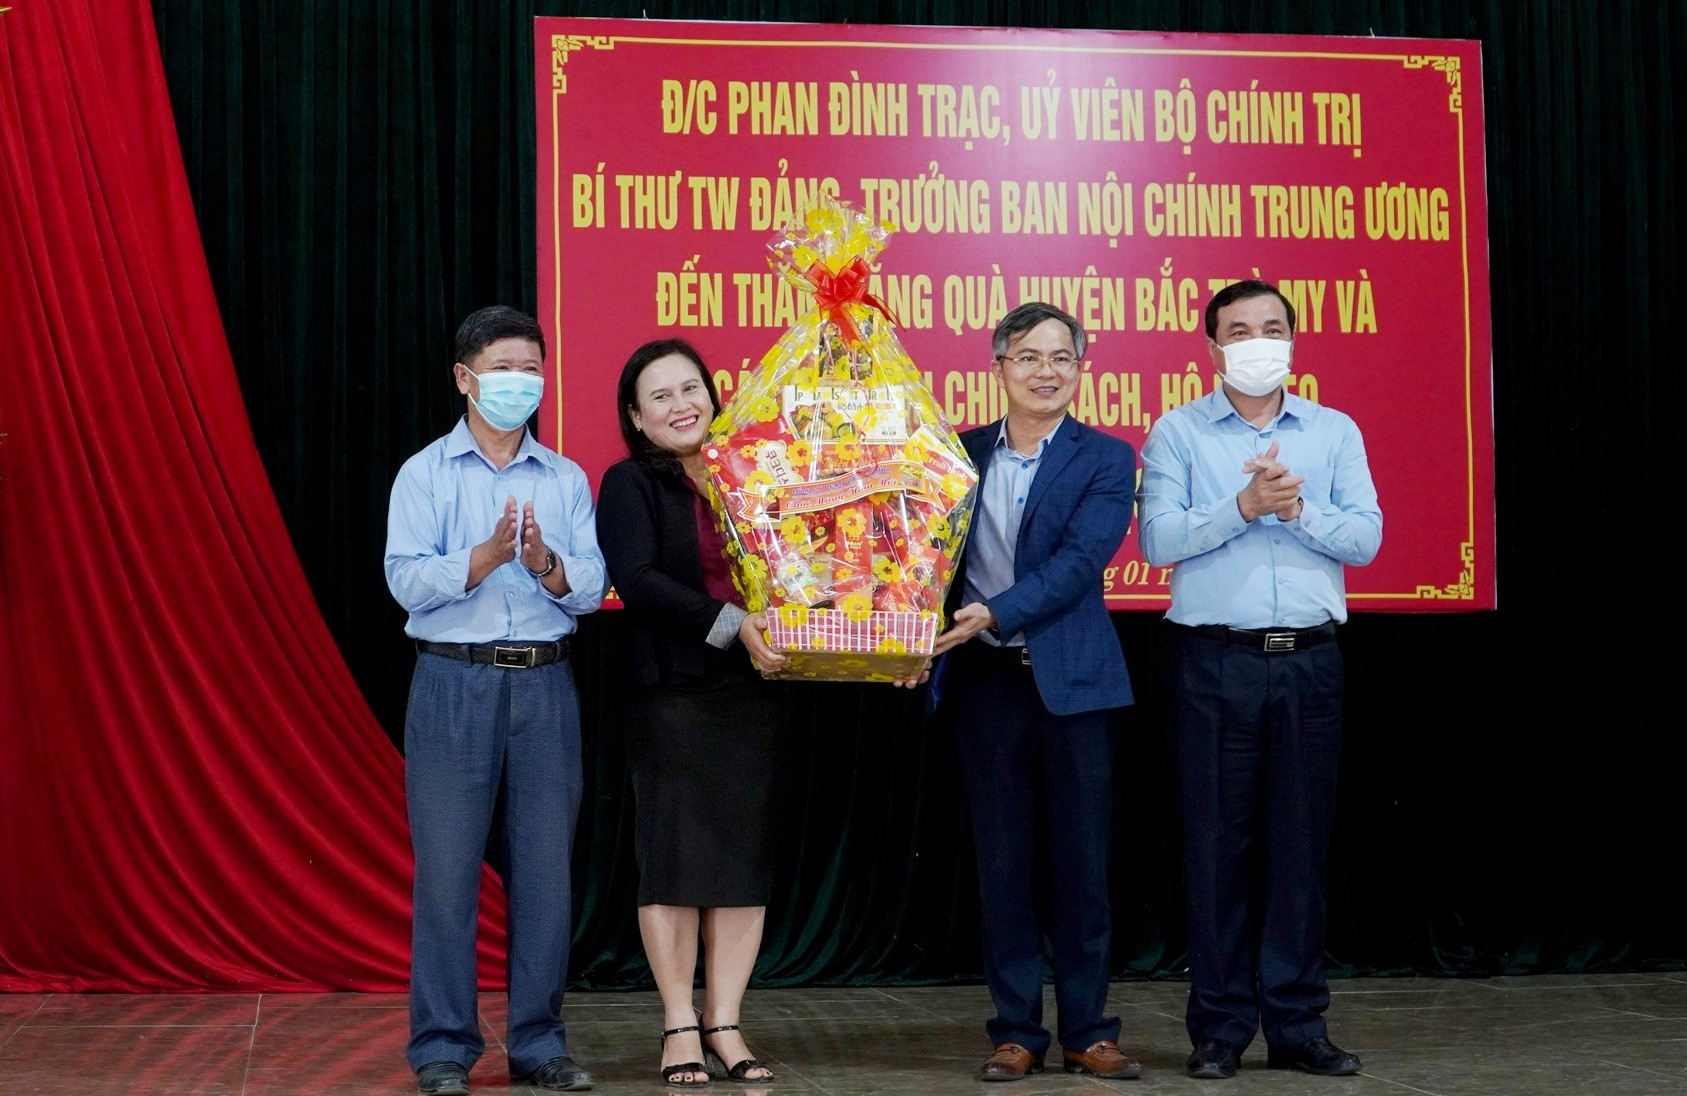 Dịp này, Bí thư Tỉnh ủy Phan Việt Cường cũng tặng quà tết cho lãnh đạo huyện Bắc Trà My. Ảnh: HỒ QUÂN